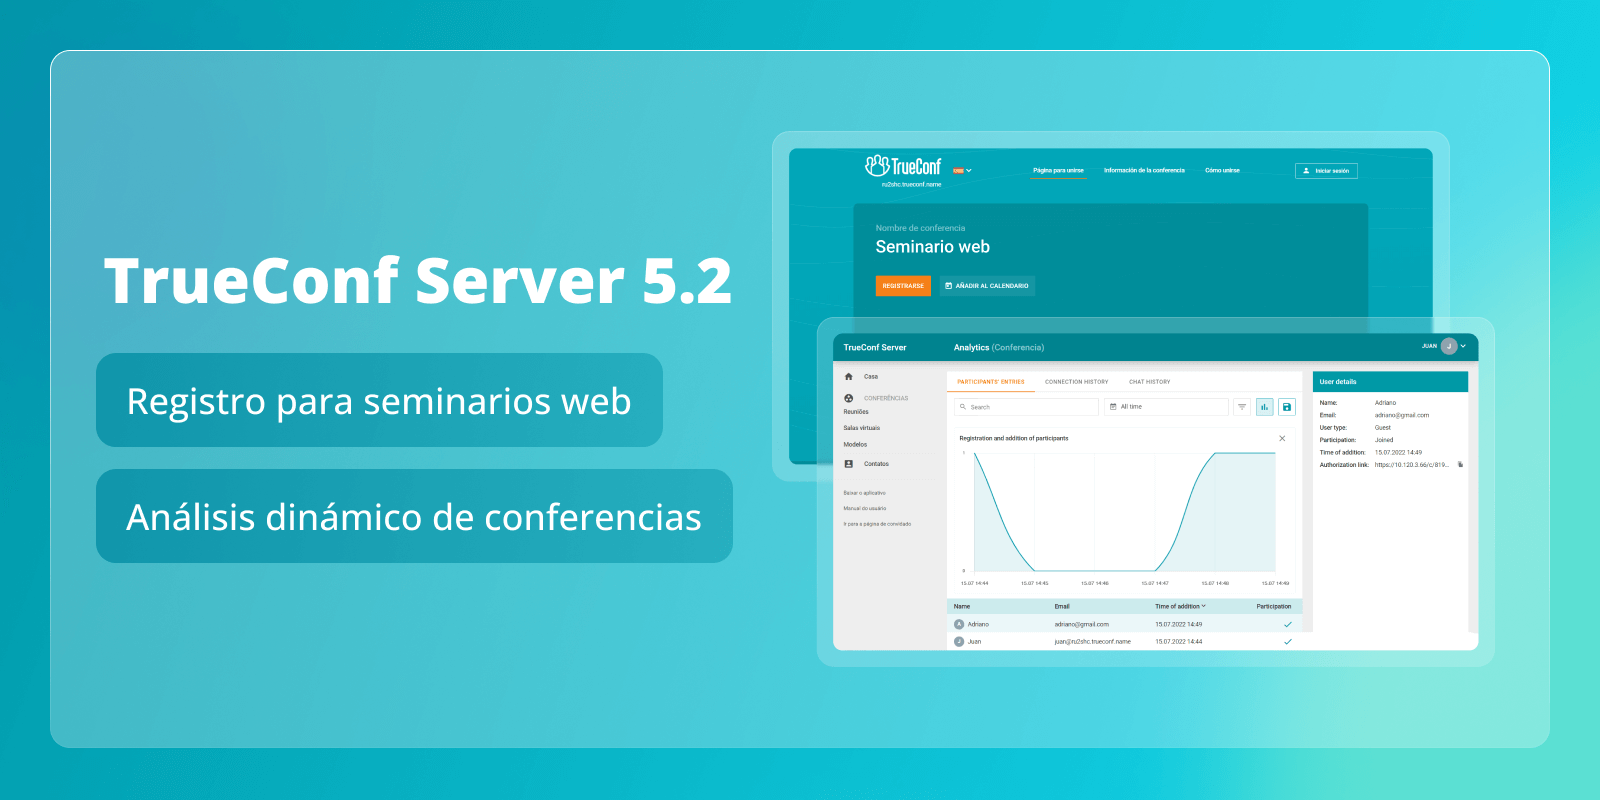 TrueConf Server 5.2: registro para seminarios web y análisis dinámico de la conferencia 4